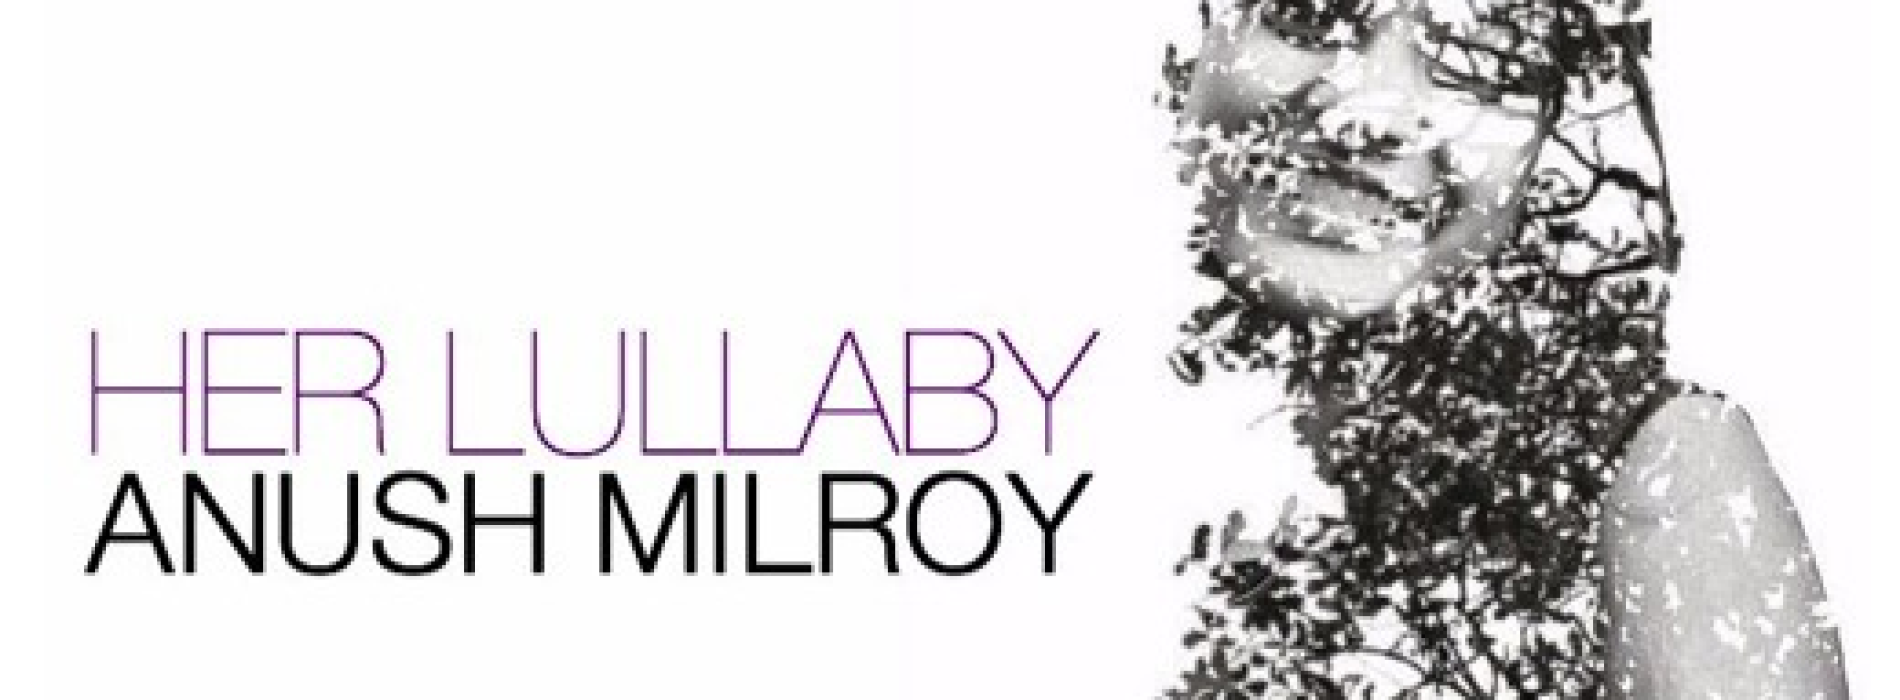 Anush Milroy – Her Lullaby (Original Mix)